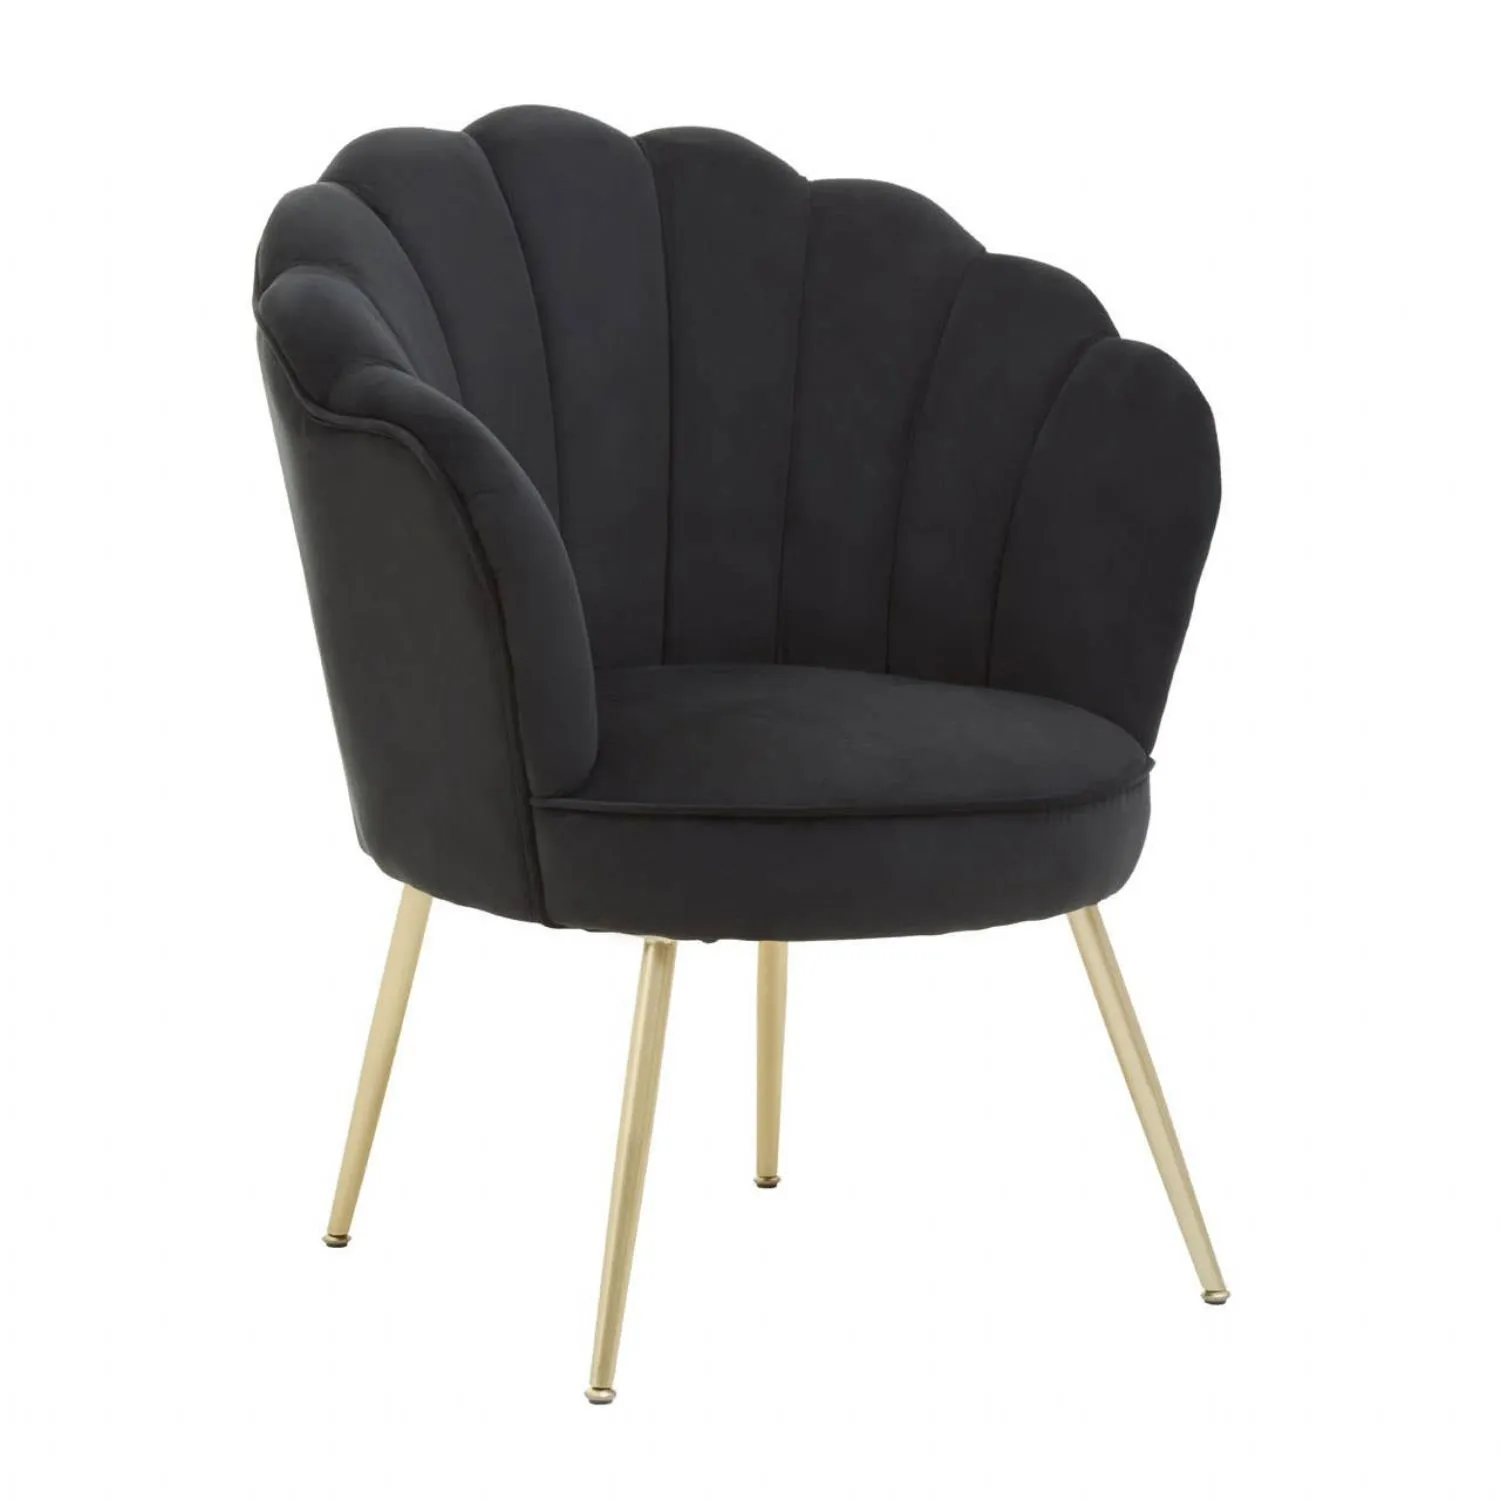 Ovala Black Velvet Scalloped Chair